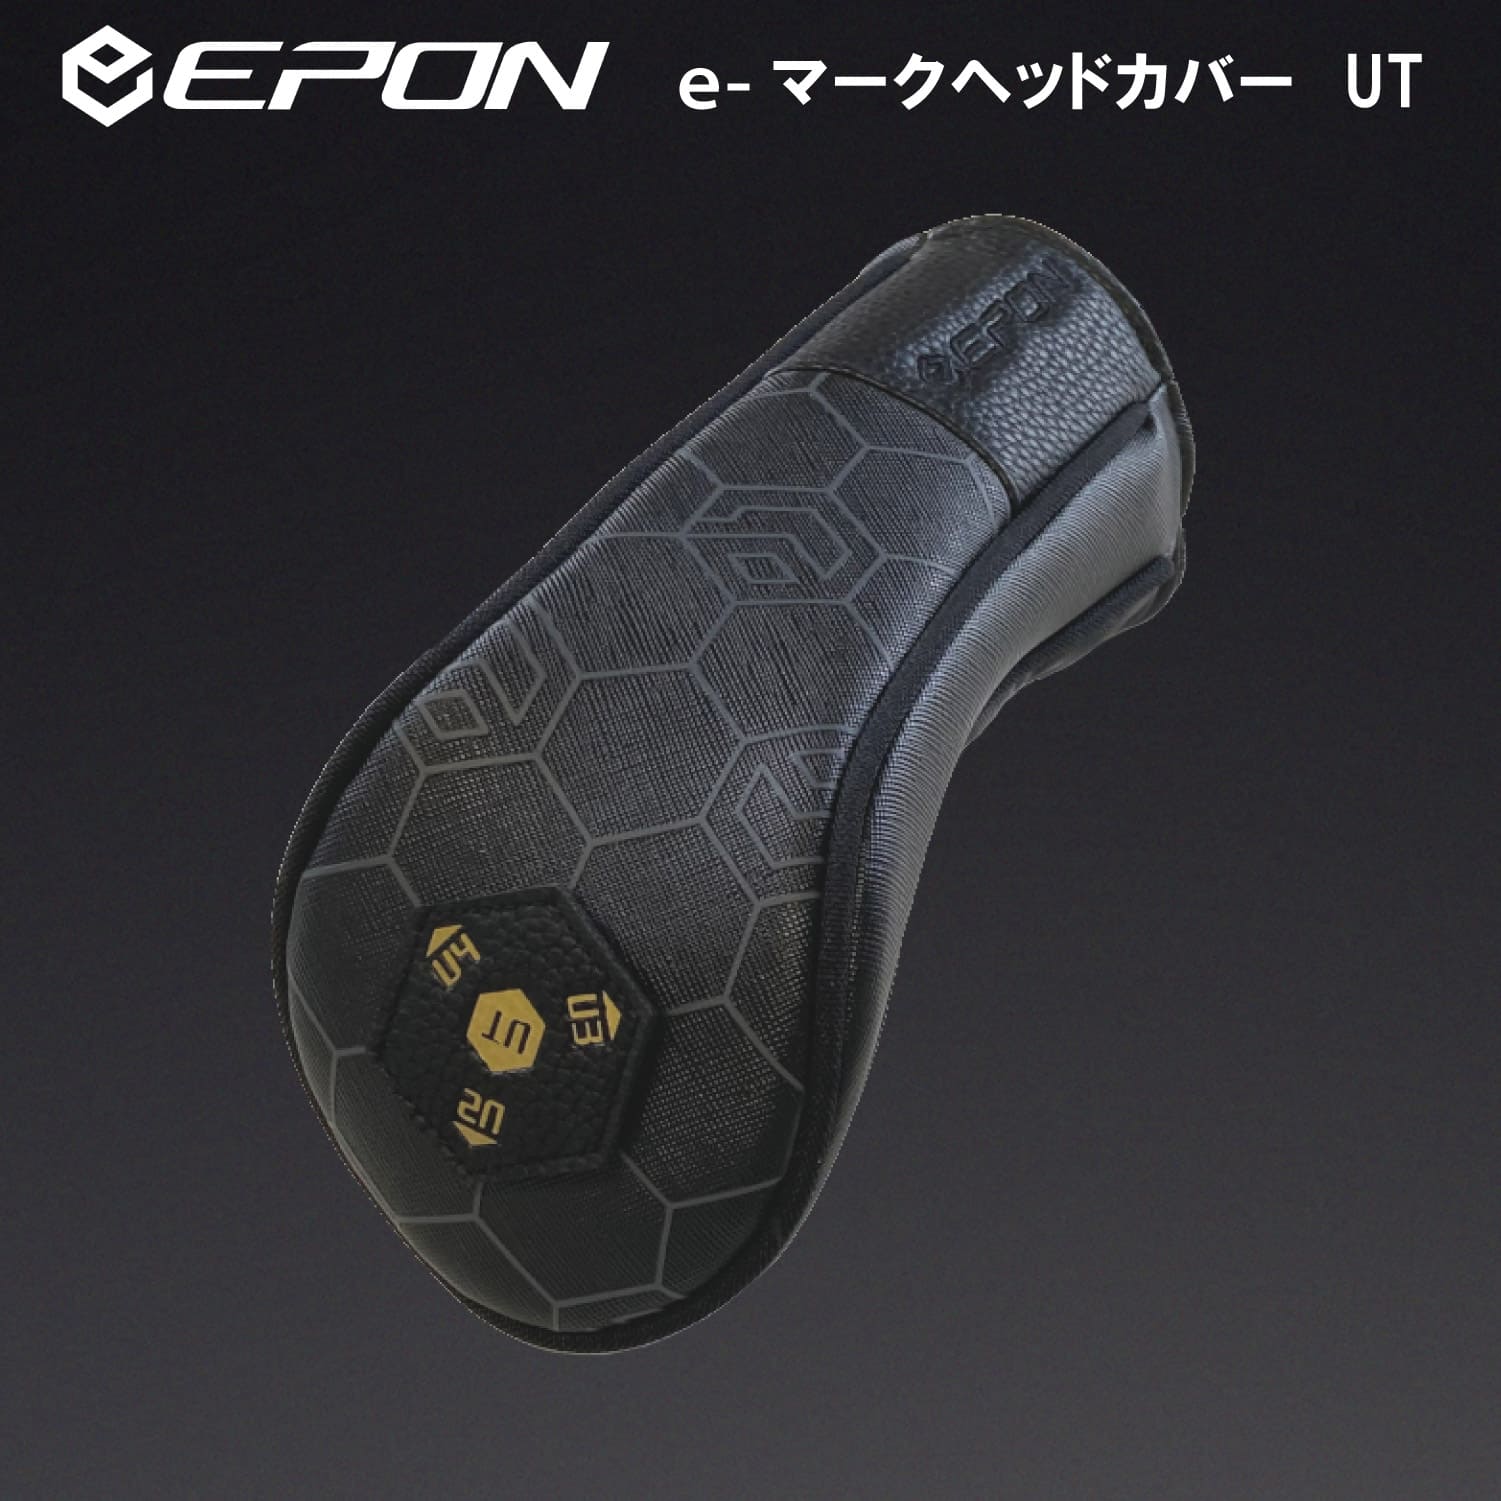 EPON eマーク標準カバー ハイブリッドUT型